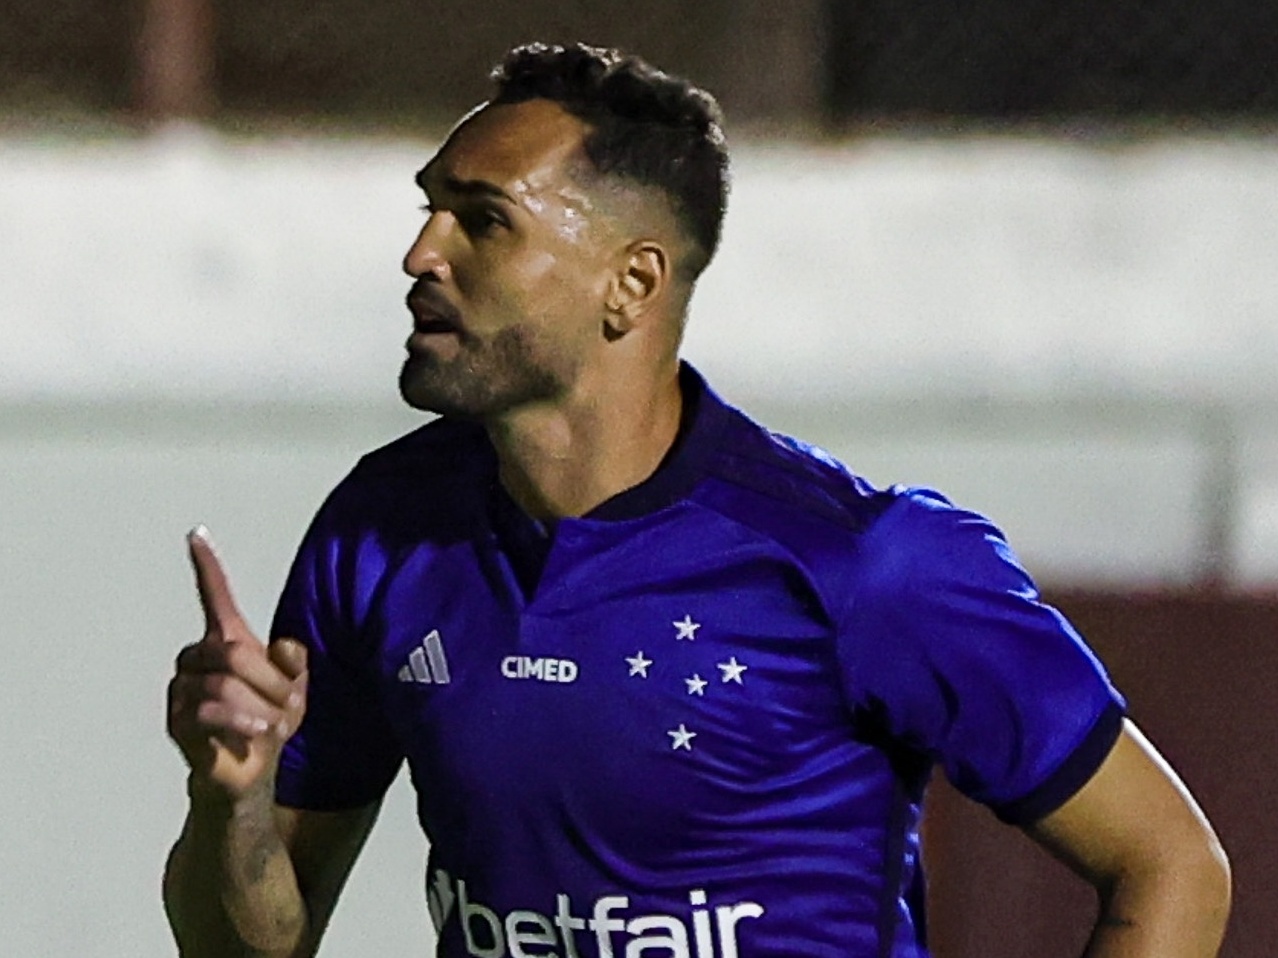 Matheus Carvalho comemora gol e quer espaço no time do Náutico - Vídeos -  Gazeta Esportiva.com